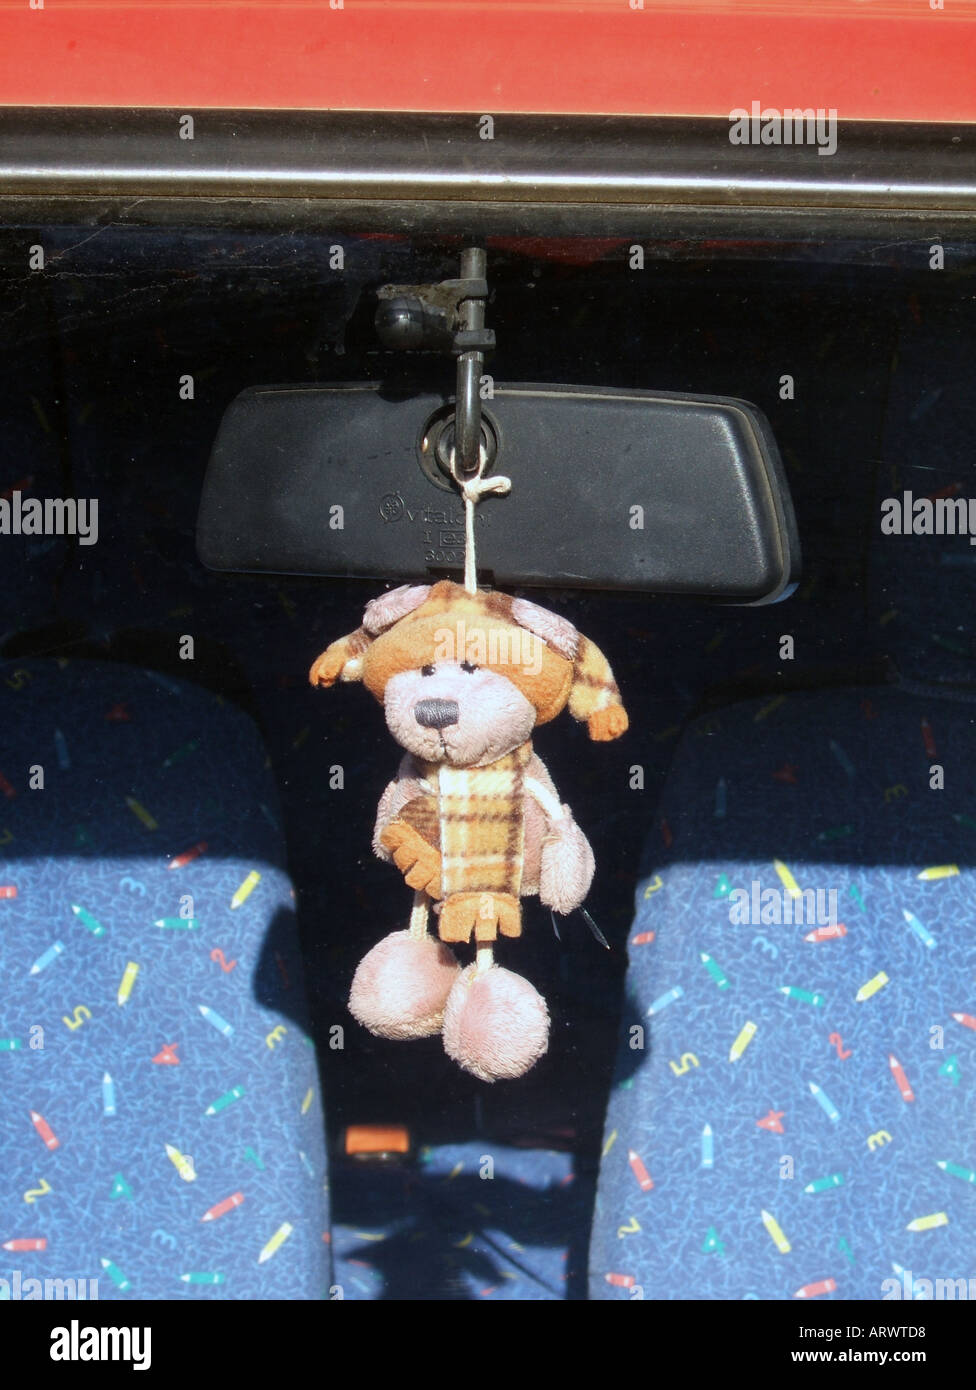 teddy bear for car